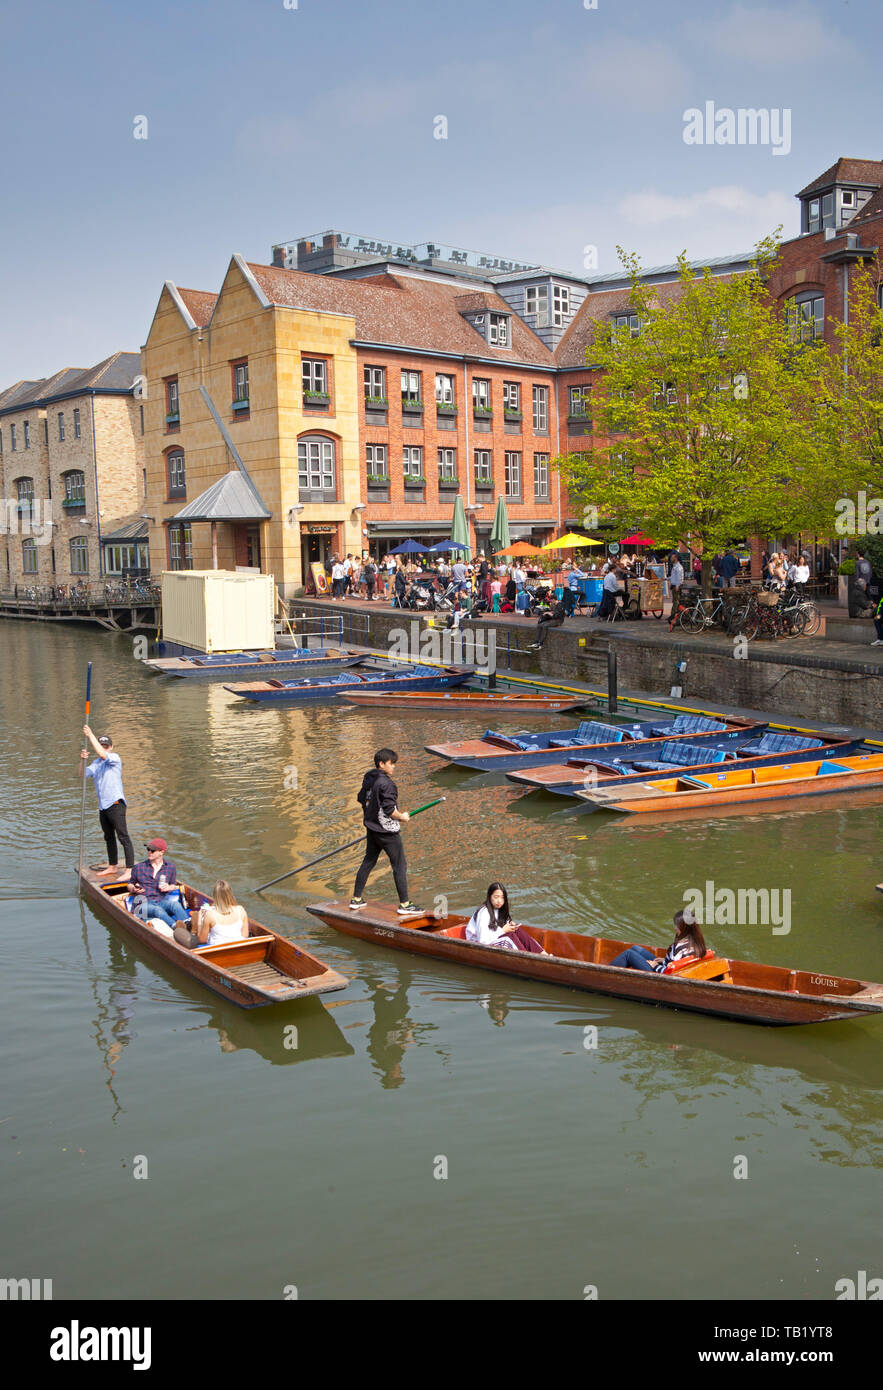 Barques sur la rivière Cam, Cambridge, England, UK Banque D'Images